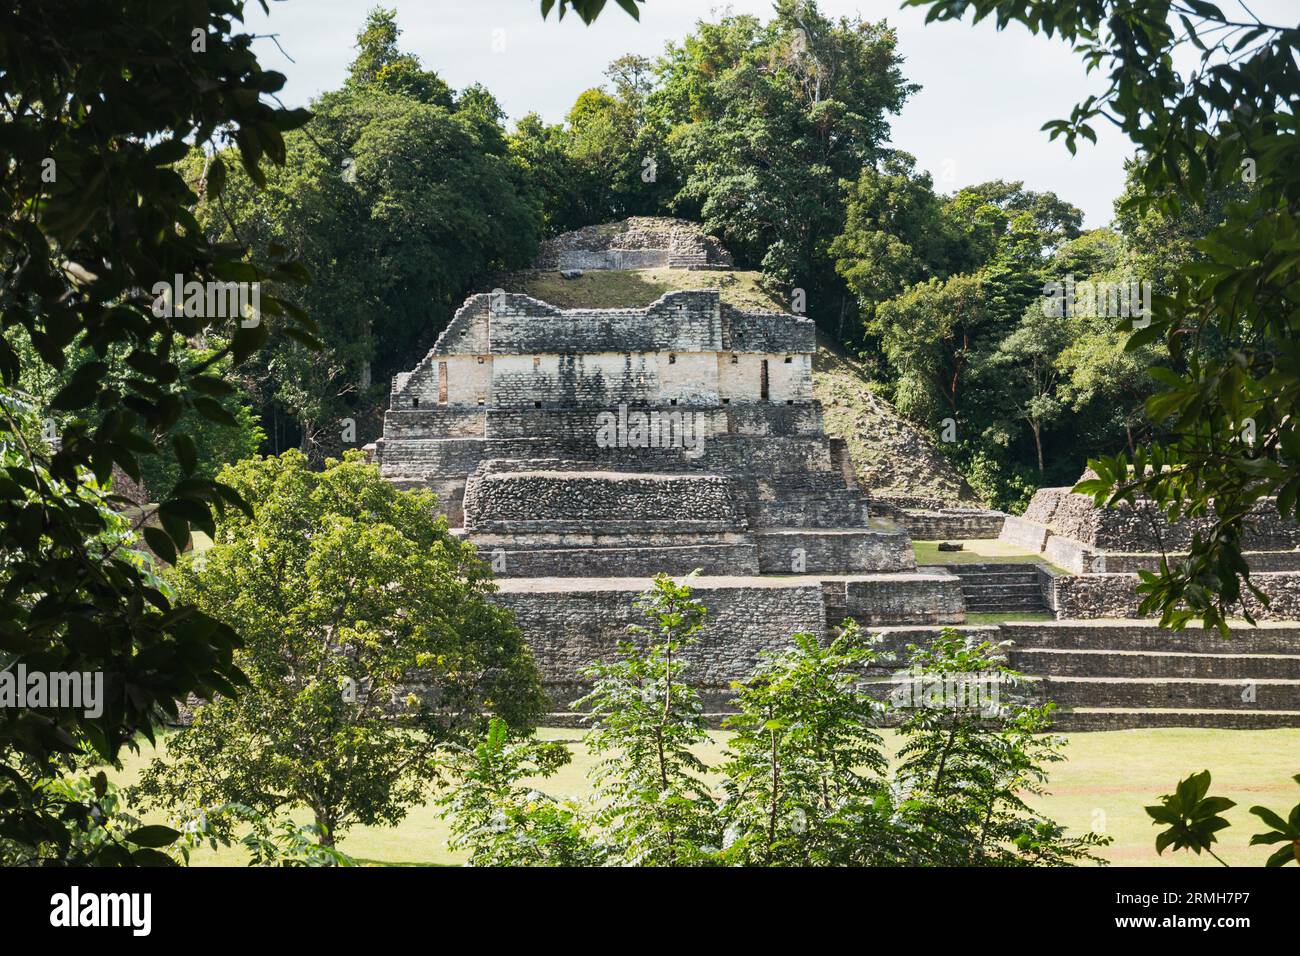 Réserve de monuments naturels de Caracol, Belize, une ville maya datant de 1200 av. J.-C. Banque D'Images